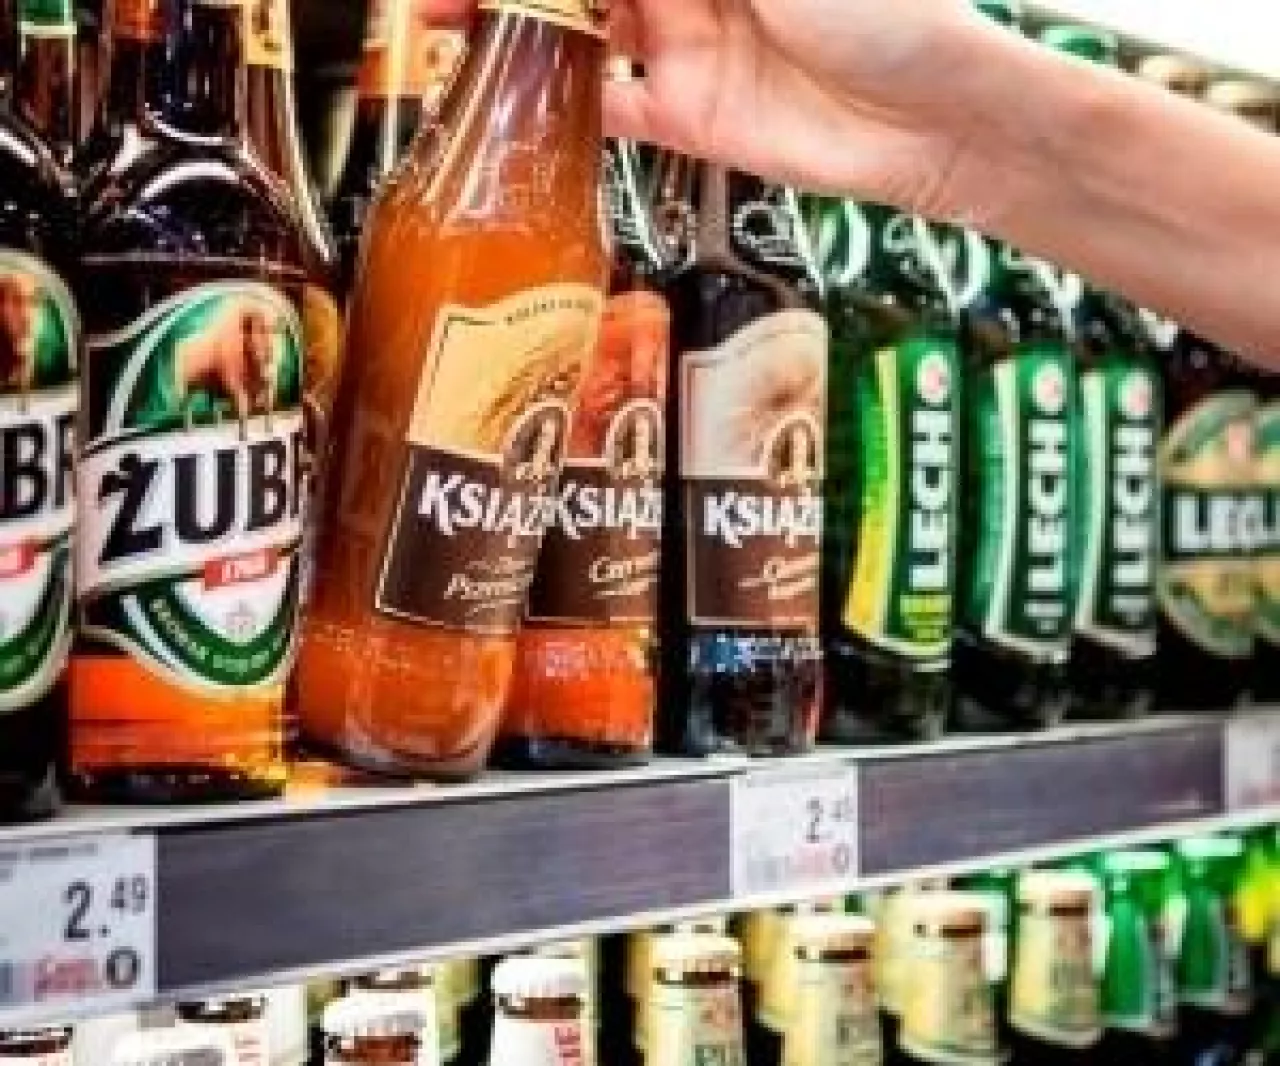 Polacy to 4. kraj w Europie pod względem konsumpcji piwa (Materiały prasowe)